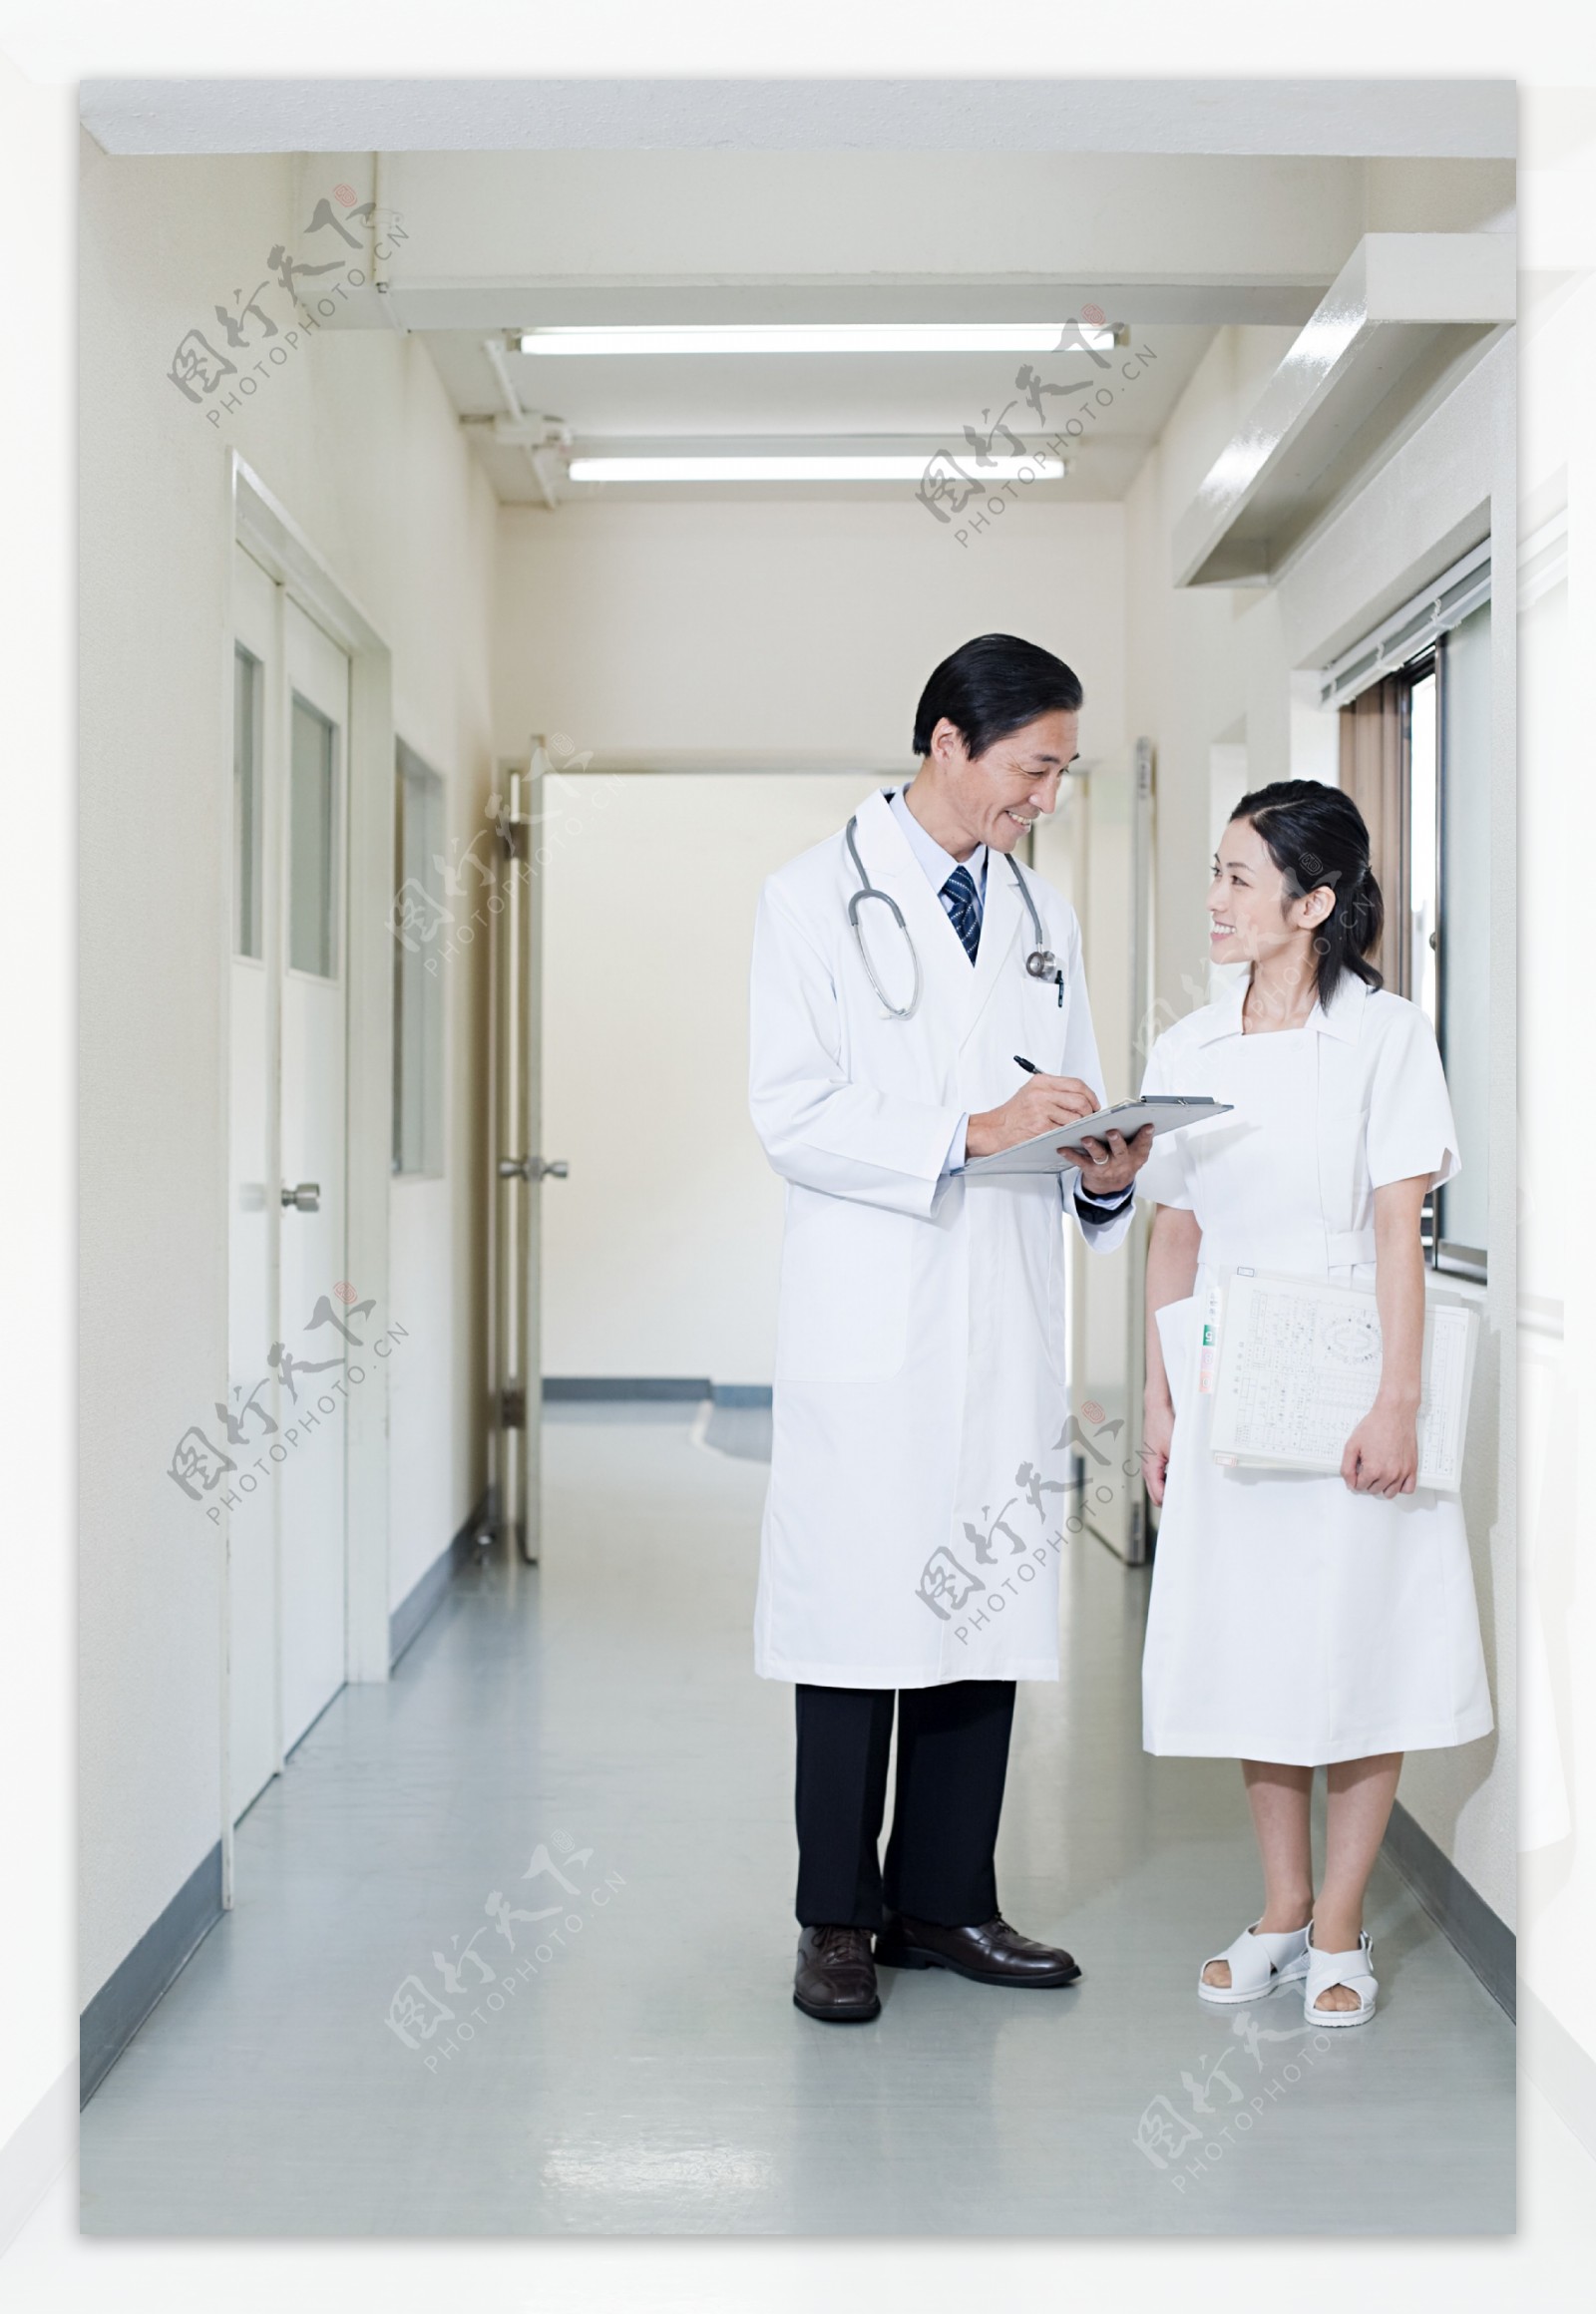 正在交流的男性医生与护士图片